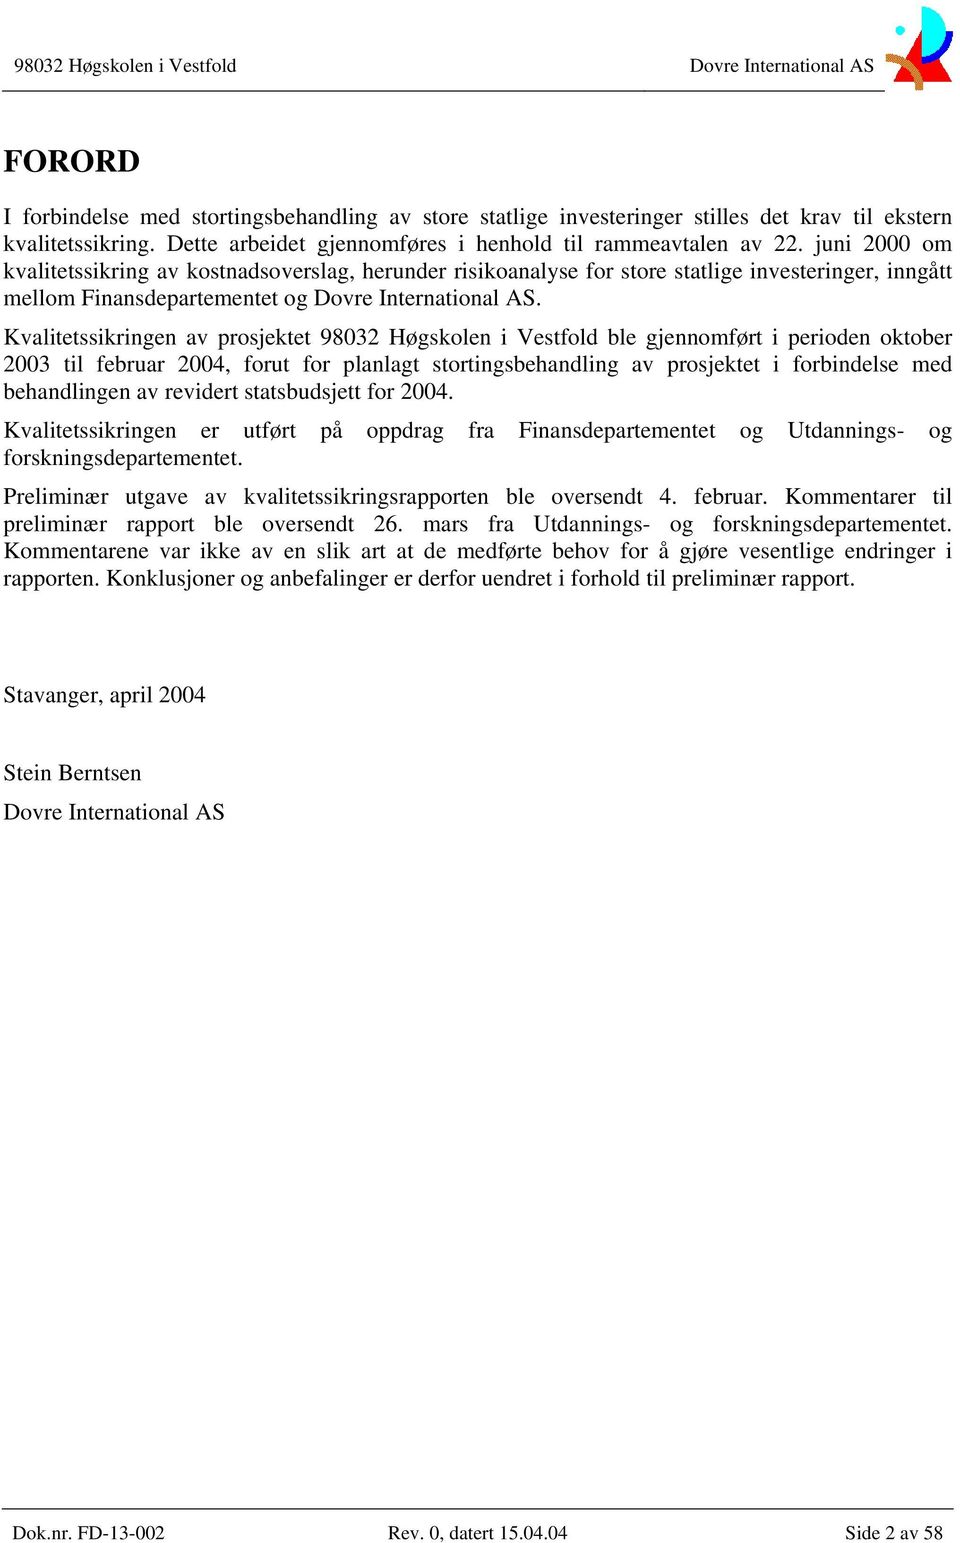 Kvalitetssikringen av prosjektet 98032 Høgskolen i Vestfold ble gjennomført i perioden oktober 2003 til februar 2004, forut for planlagt stortingsbehandling av prosjektet i forbindelse med